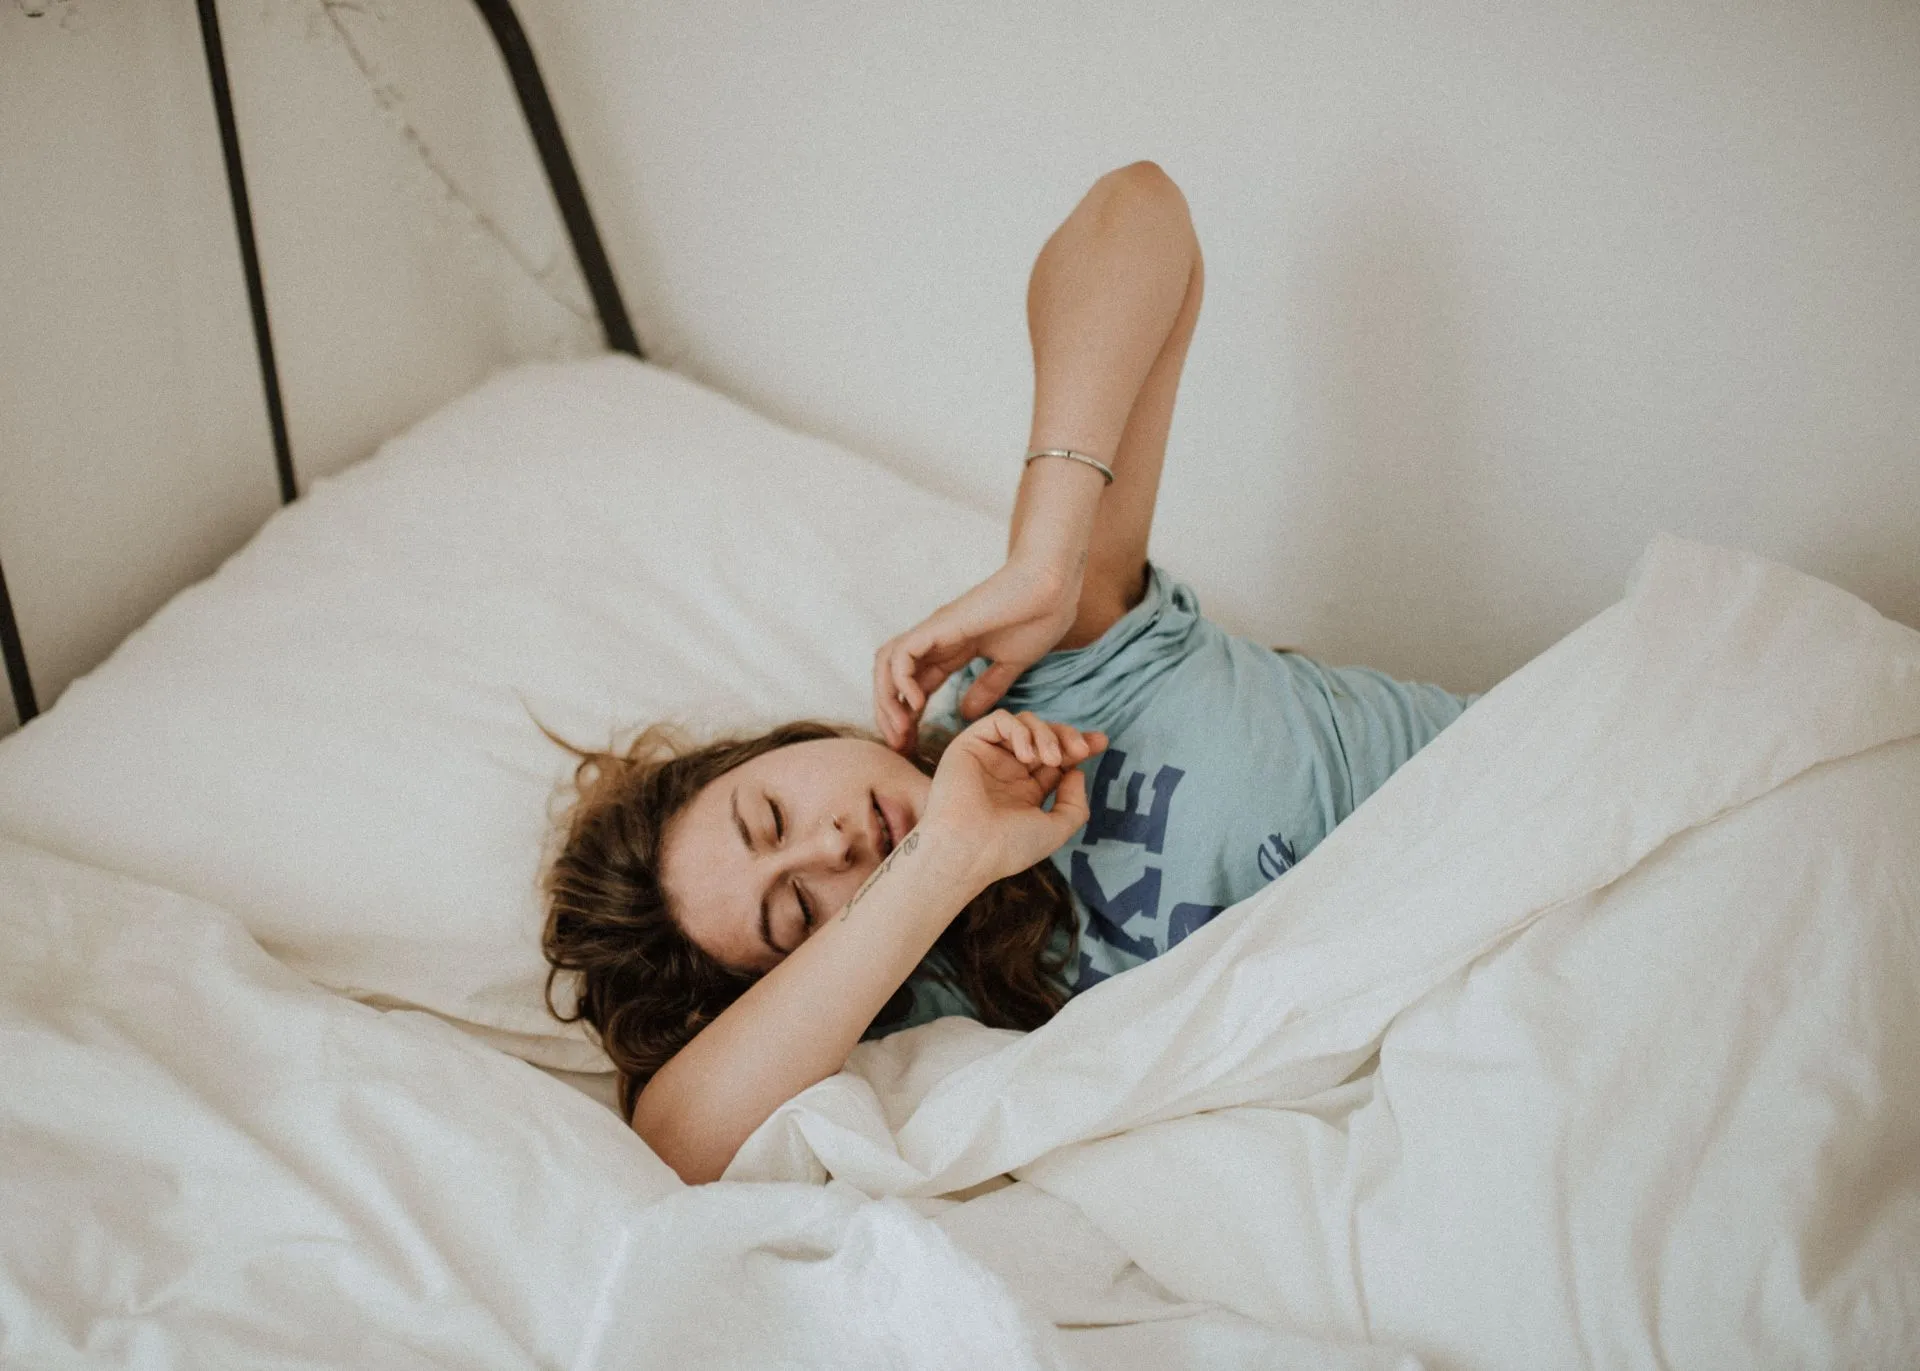 Преимущества криотерапии: помогает улучшить качество сна (изображение через unsplash/kinga Howard)